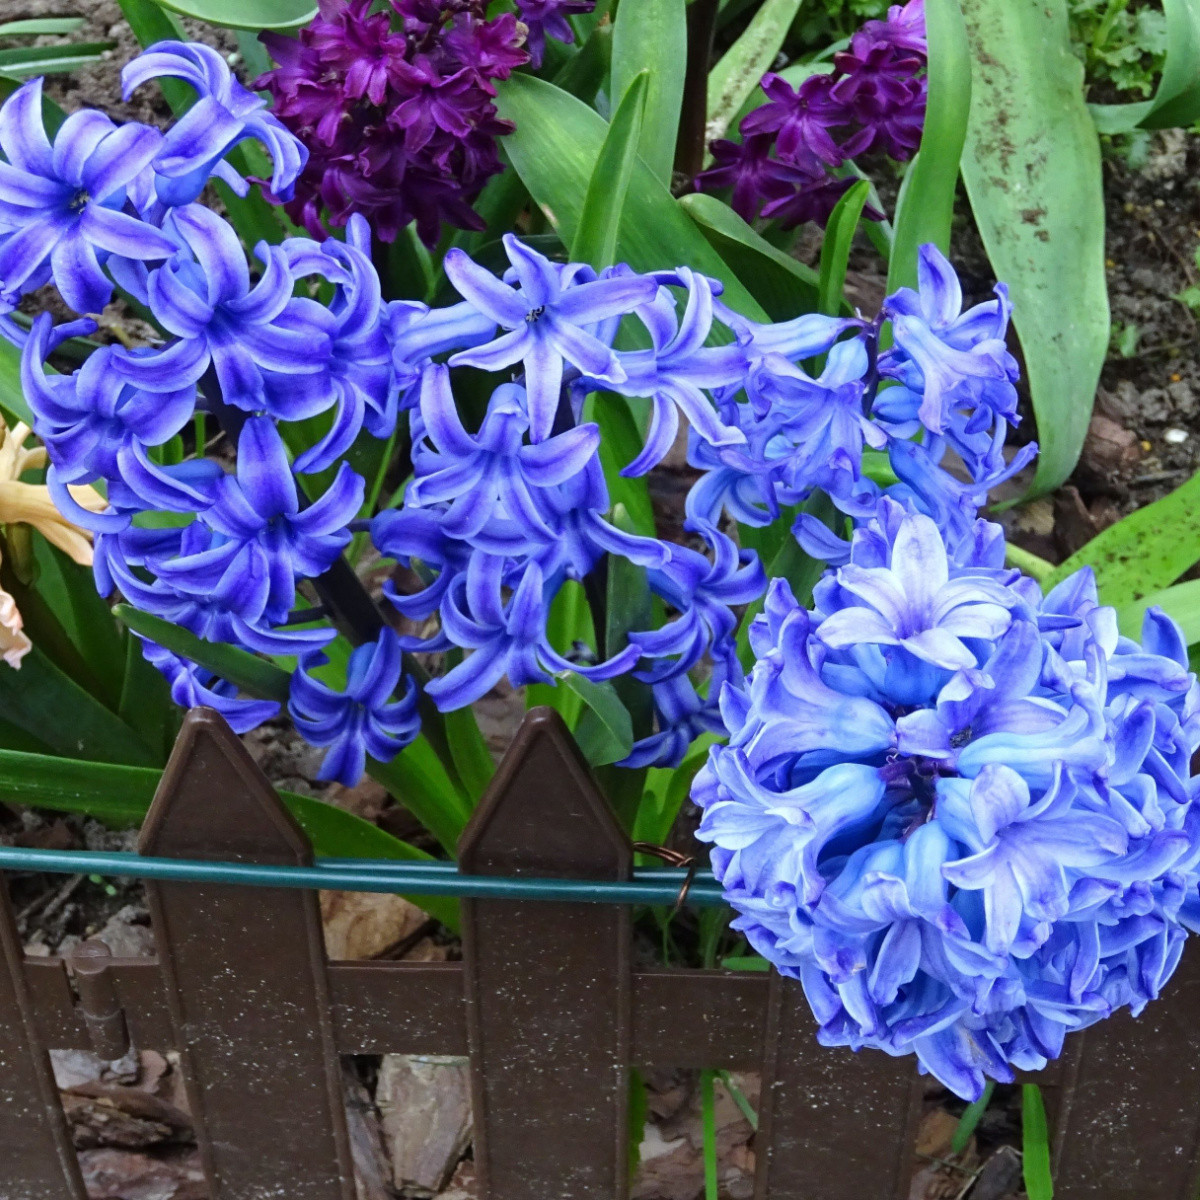 Hyacint modrý Delft Blue - Hyacinthus orientalis - prodej cibulovin - 1 ks